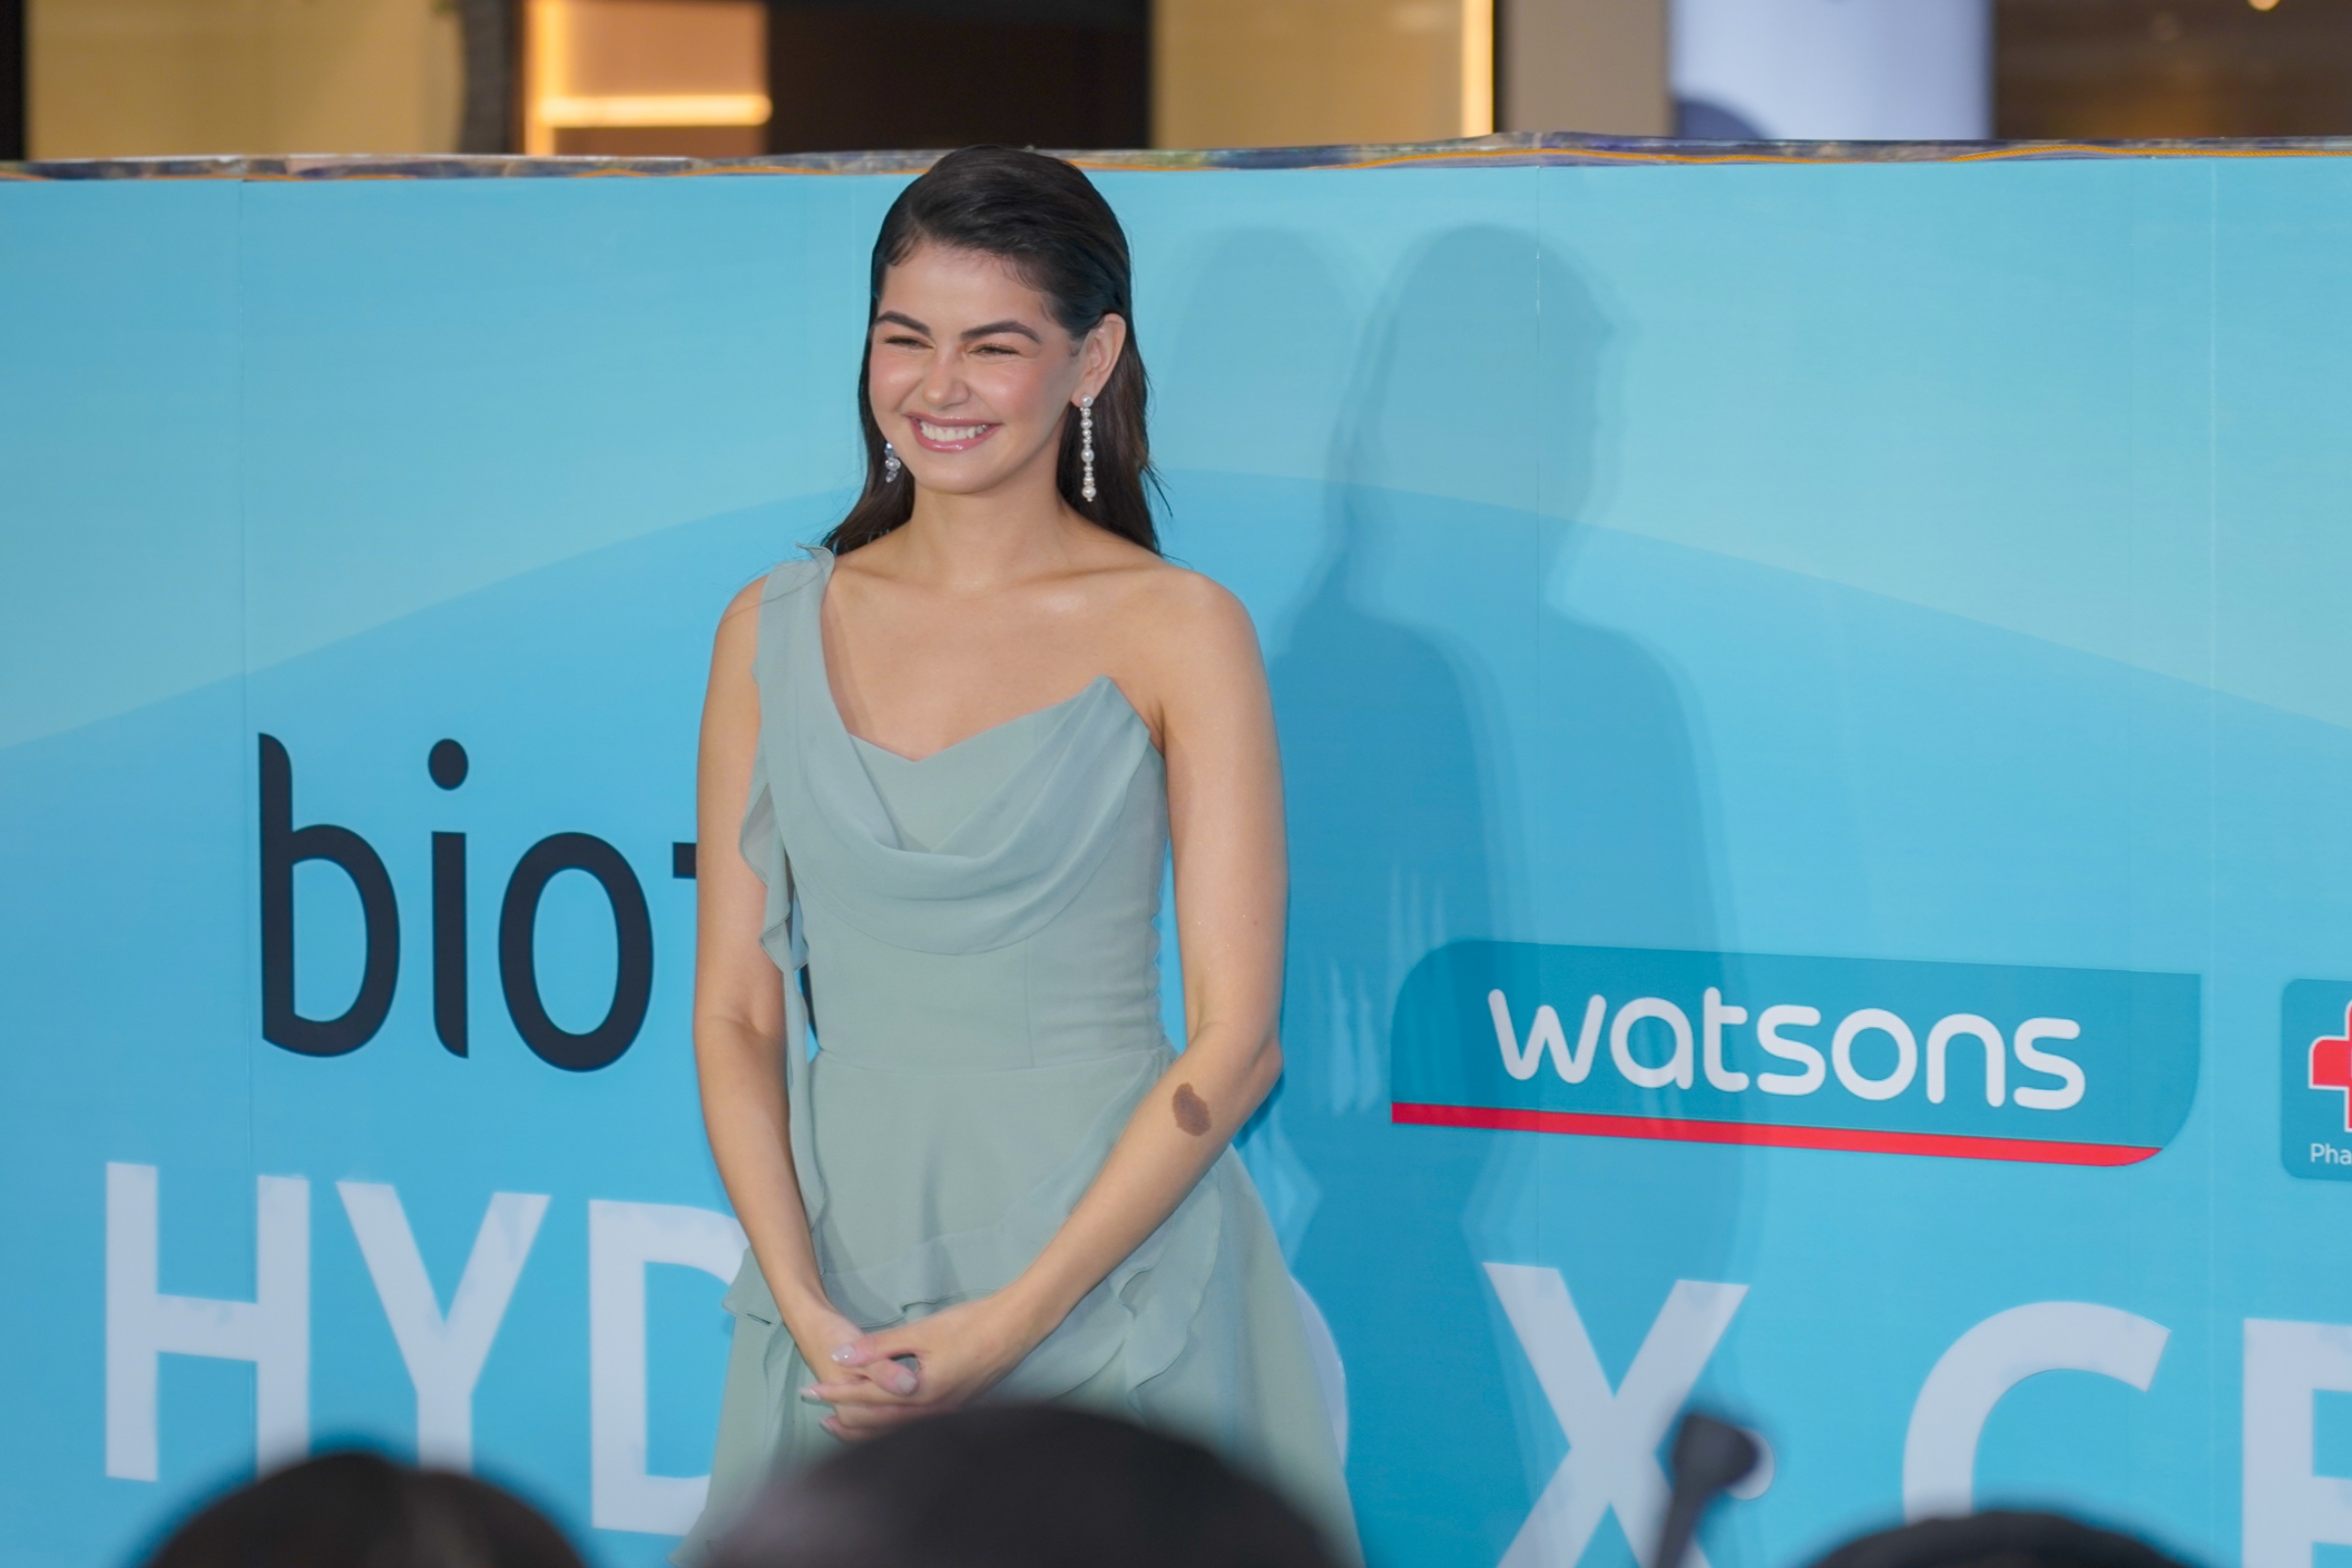 Bioten Philippines' newest brand ambassador Janine Gutierrez